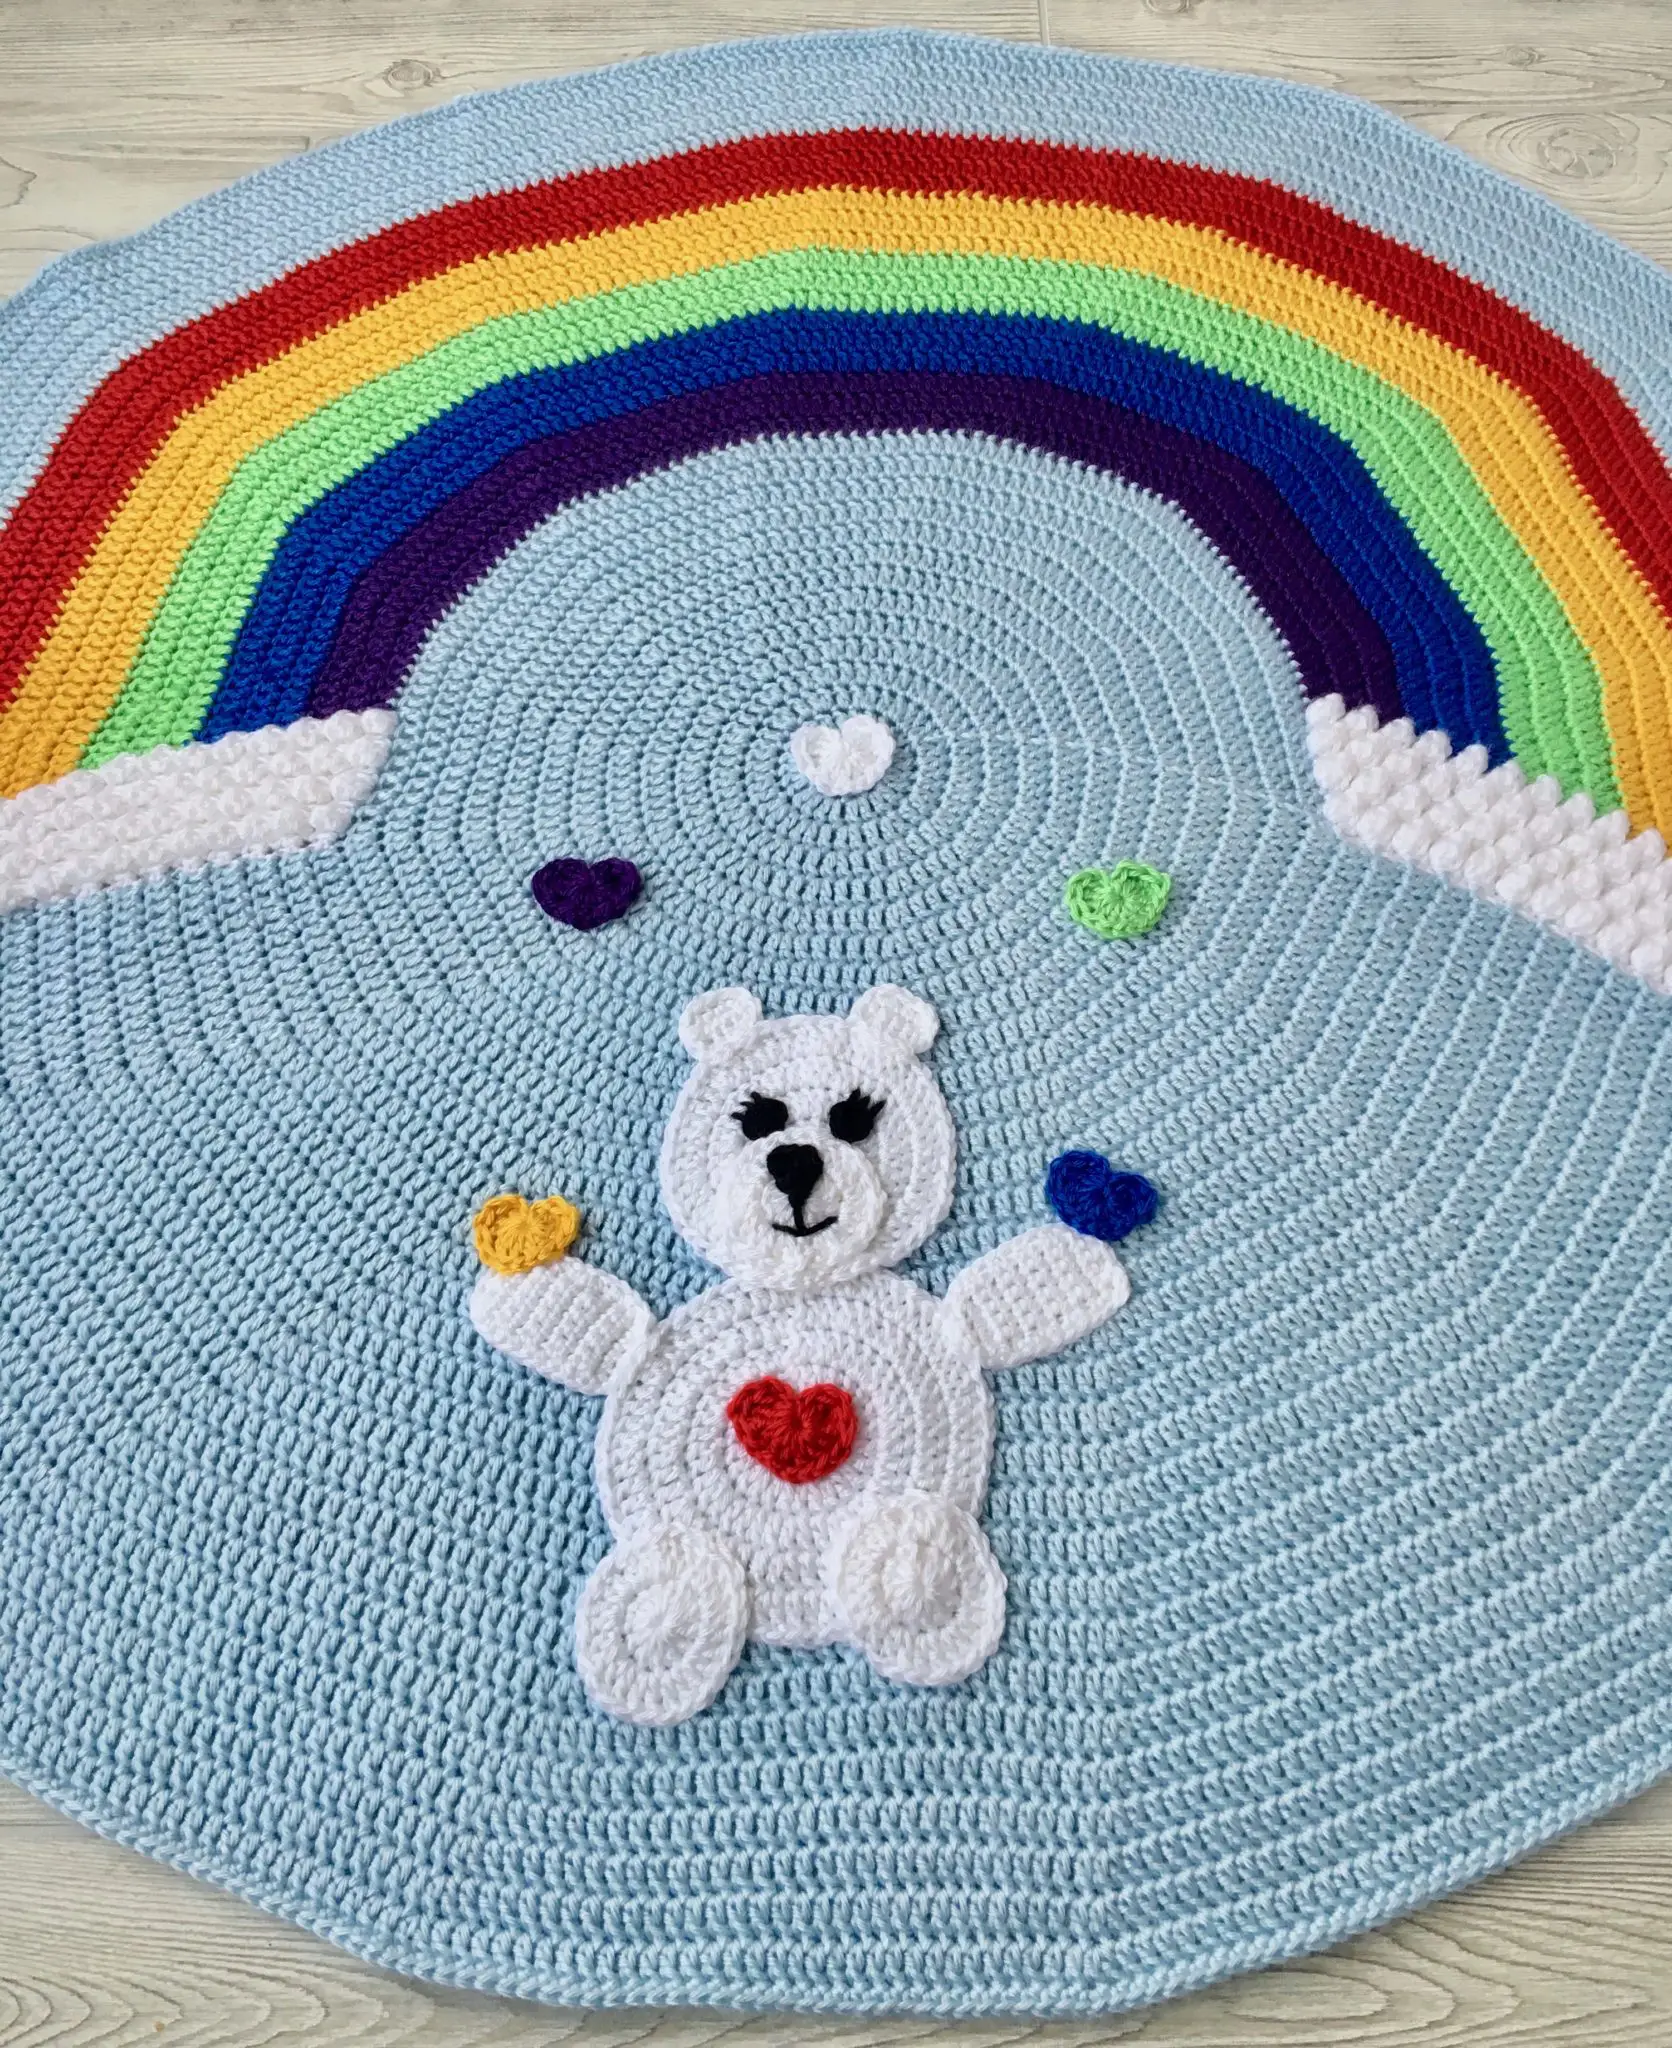 Love Bear Rainbow Baby Blanket free crochet pattern